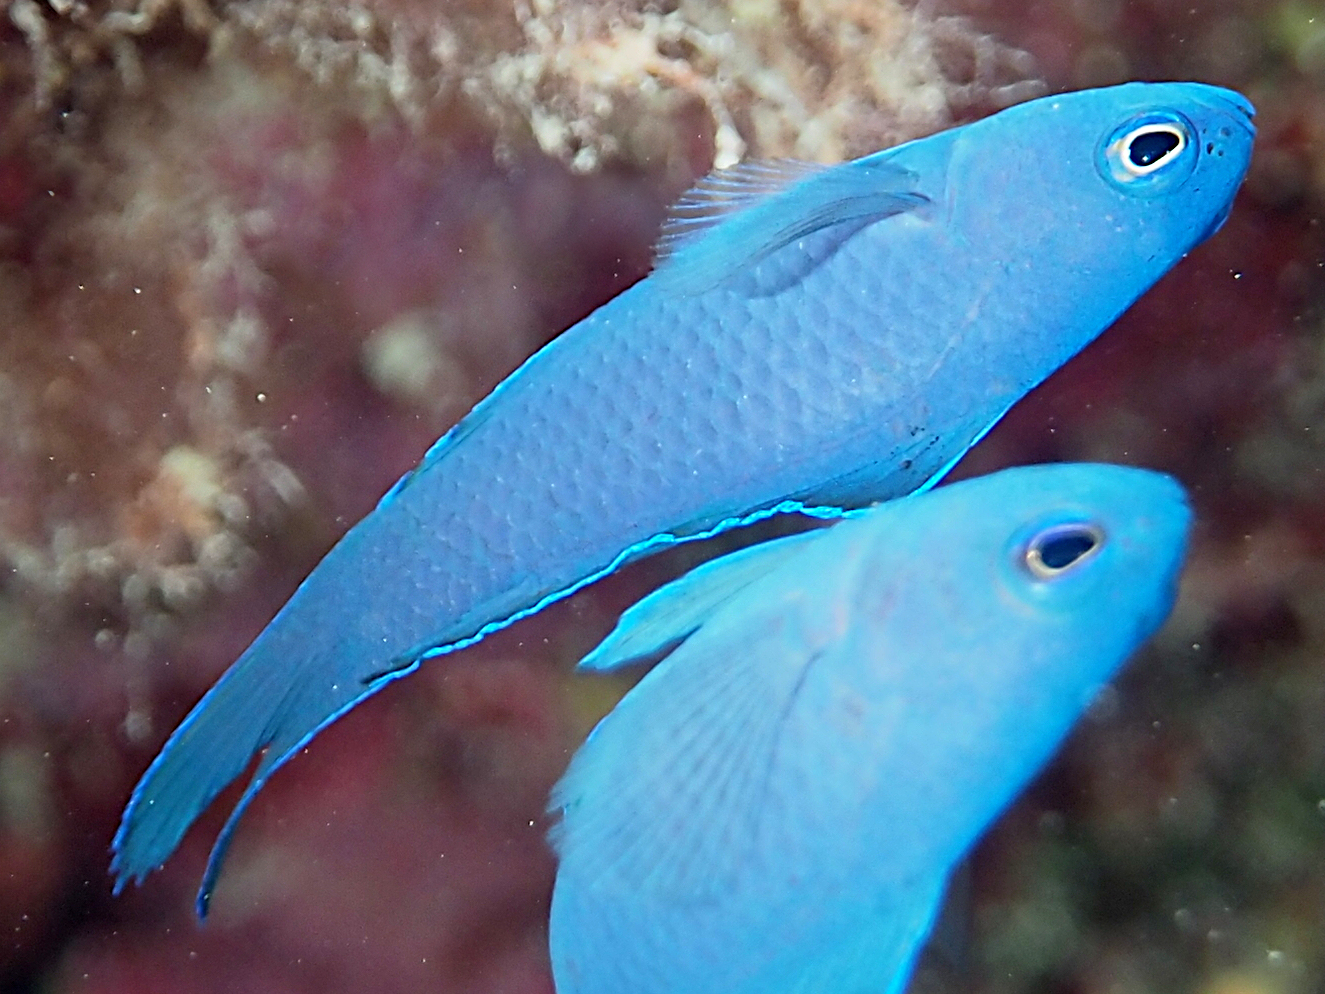 Blue Devilfish - Assessor macneilli